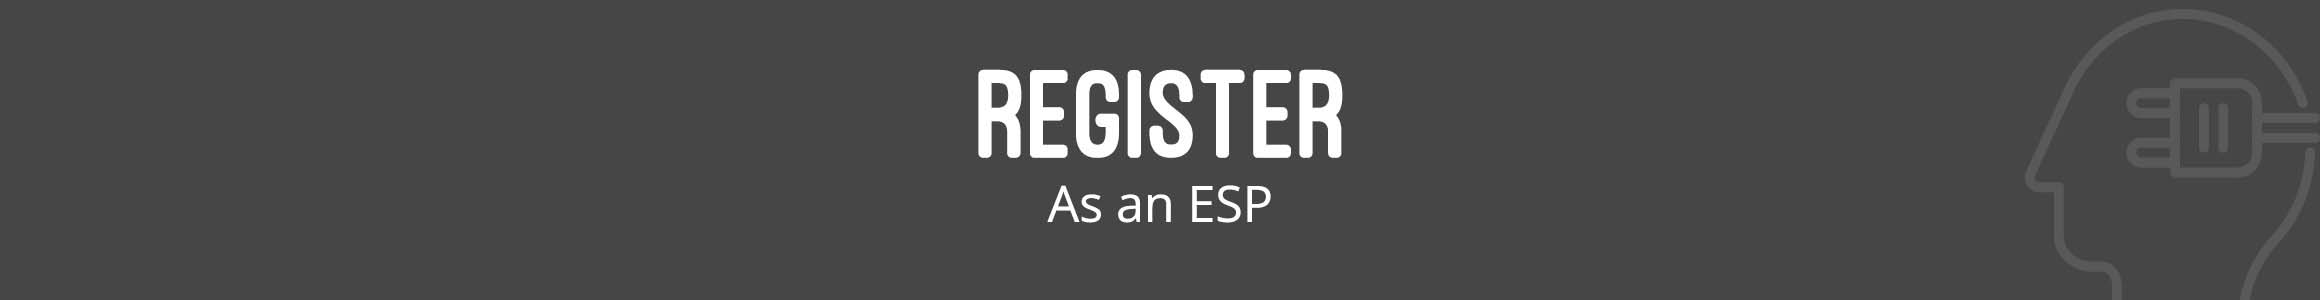 Register As an ESP